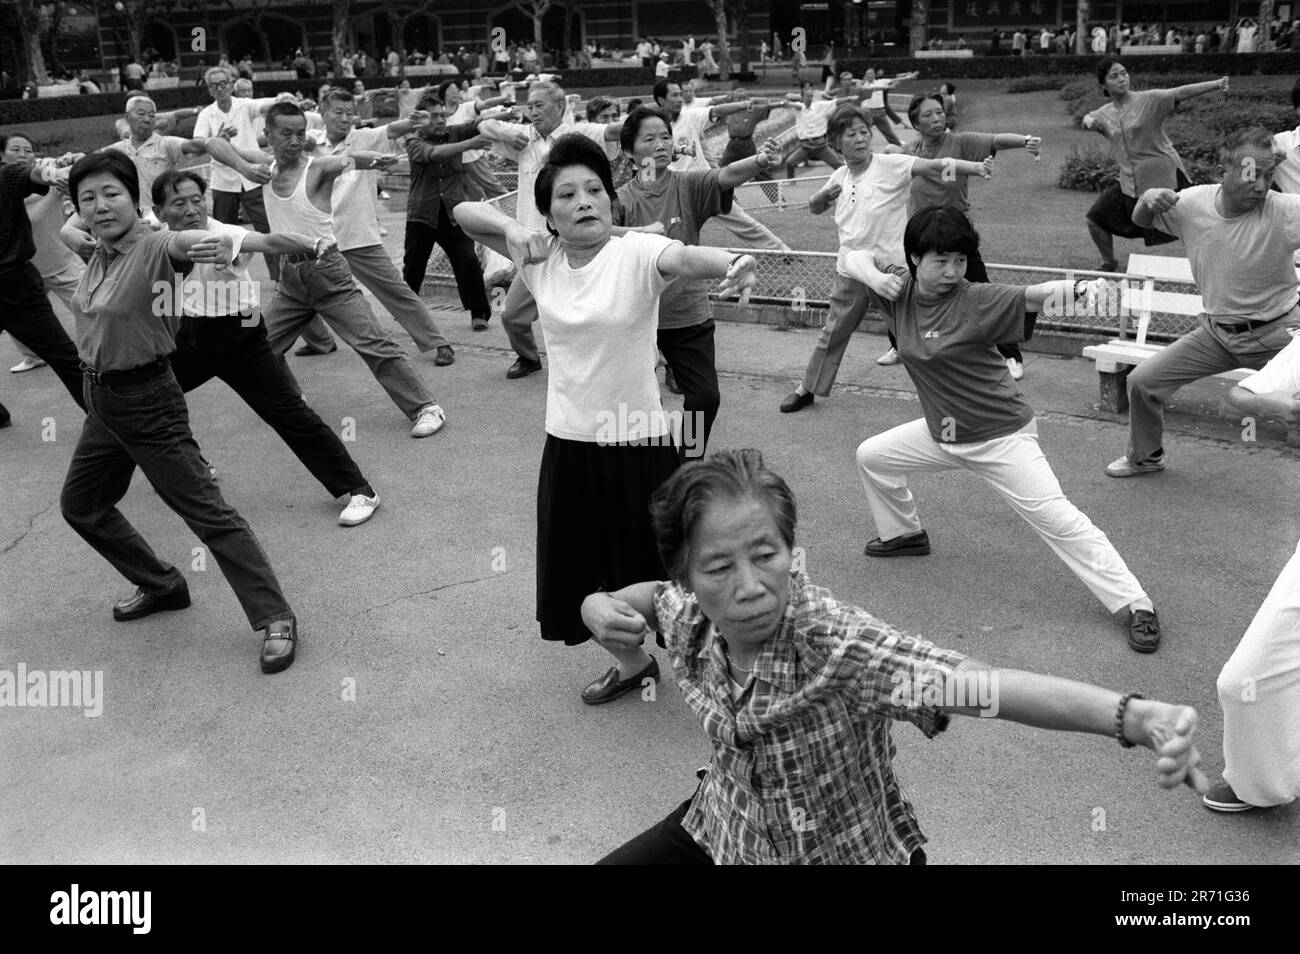 Shanghai Cina 2000. Intorno alle 6am:00 ogni mattina Fuxing Park inizia a riempirsi. Ai suoni di numerosi lettori di cassette, i gruppi eseguono ballo da ballo, danze dei tifosi, tai chi ed esercizi di stile libero con grande serietà. Ciò continua le tradizioni delle attività collettive comuniste. Esercitazioni sopra, la gente cammina intorno chiacchierare e ridere che rende l'esercitazione molto un'attività sociale. 2000s OMERO SYKES Foto Stock